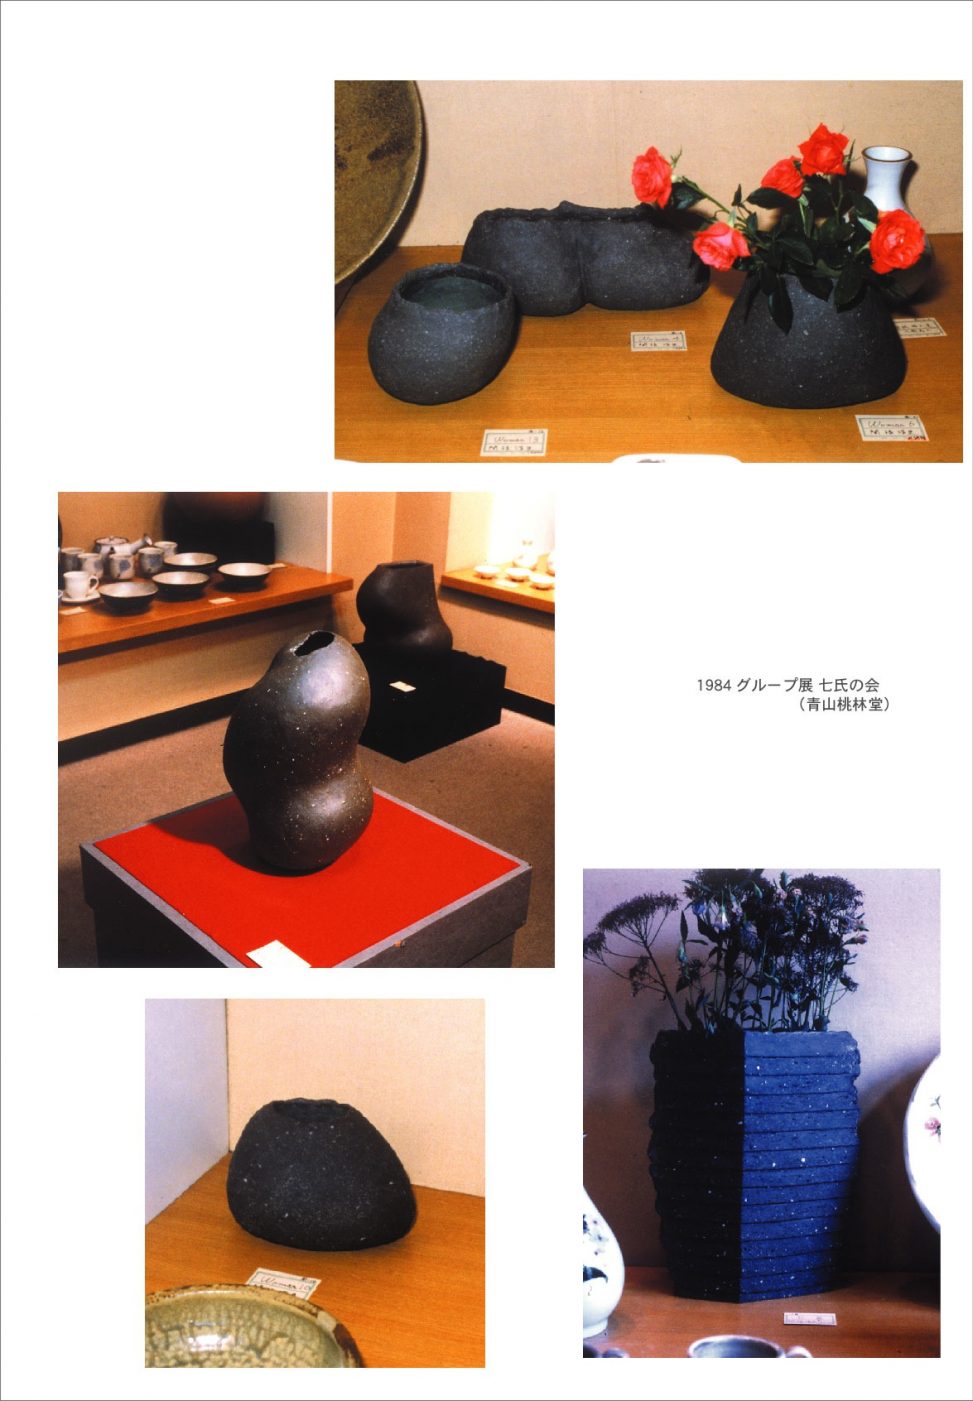 1984年青山桃林堂にてグループ展「七氏の会」に出展した彫刻作品